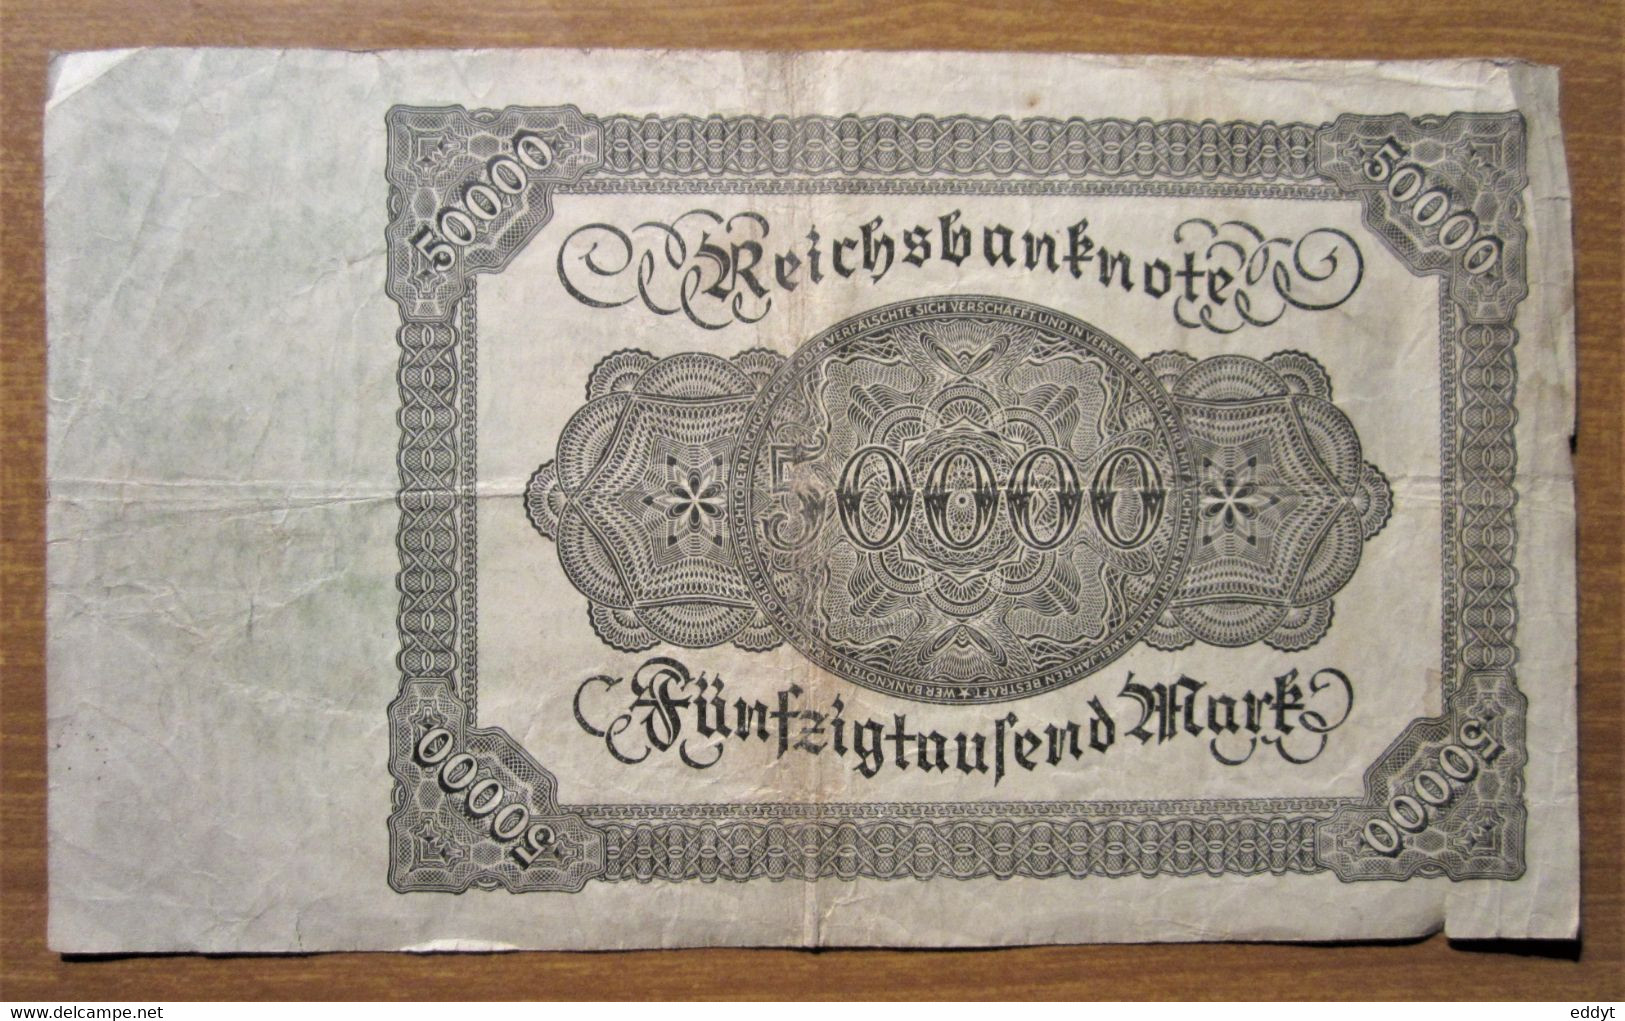 N° 1 / Billet, Allemagne, 50.000 Mark  -  Ft: 19 X 11 Cm - 1922, - 500000 Mark